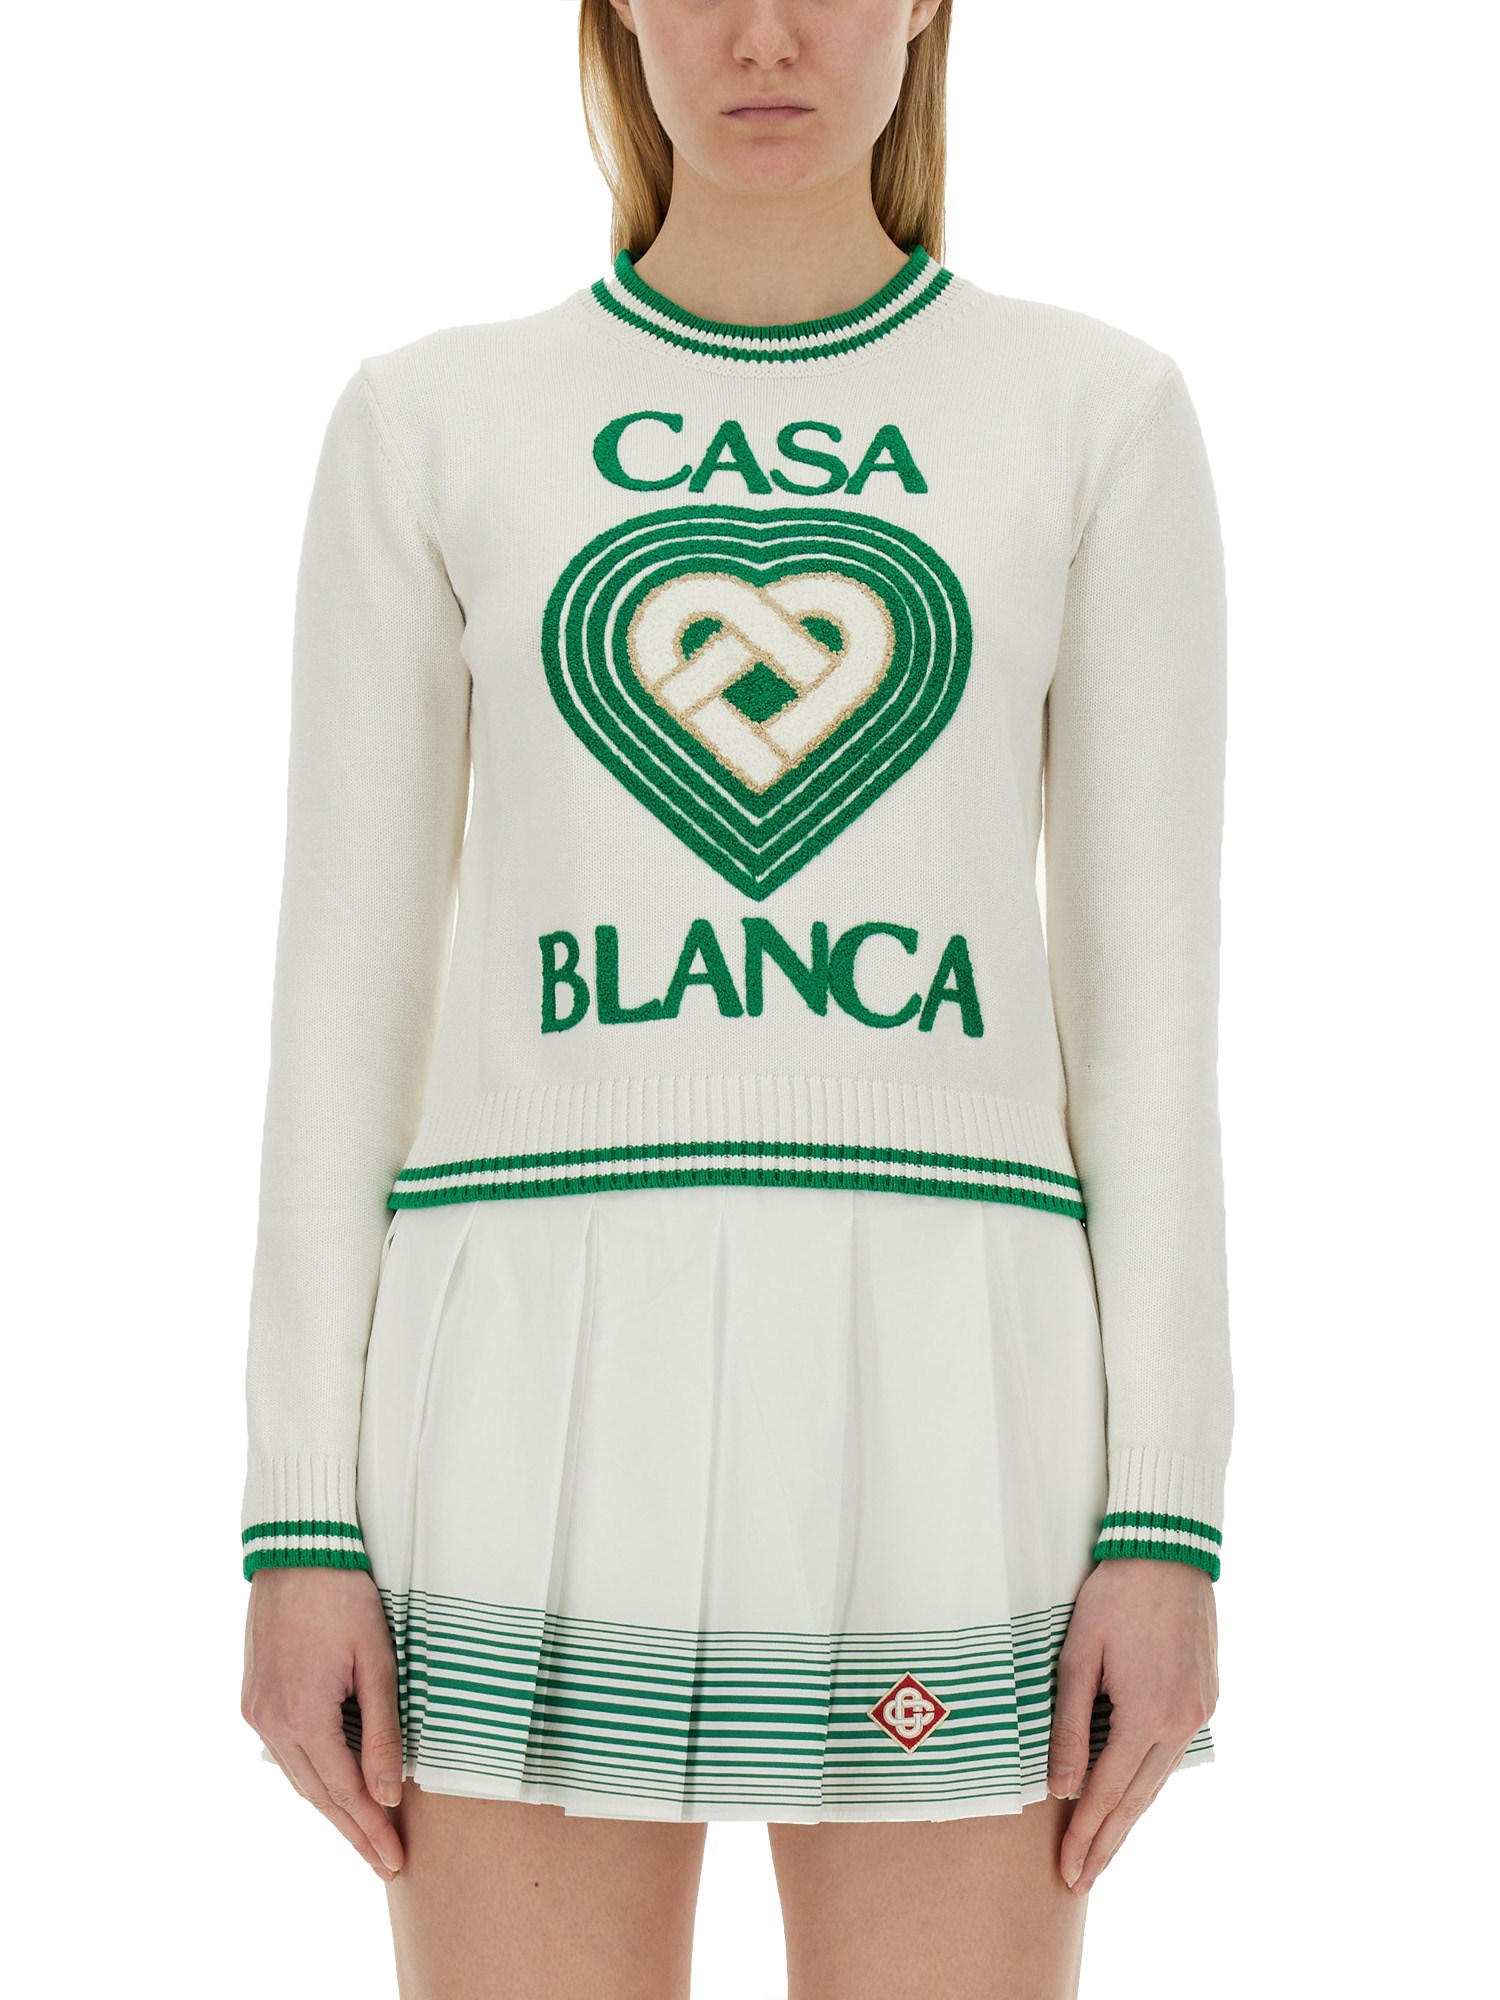 Casablanca casablanca jersey with logo